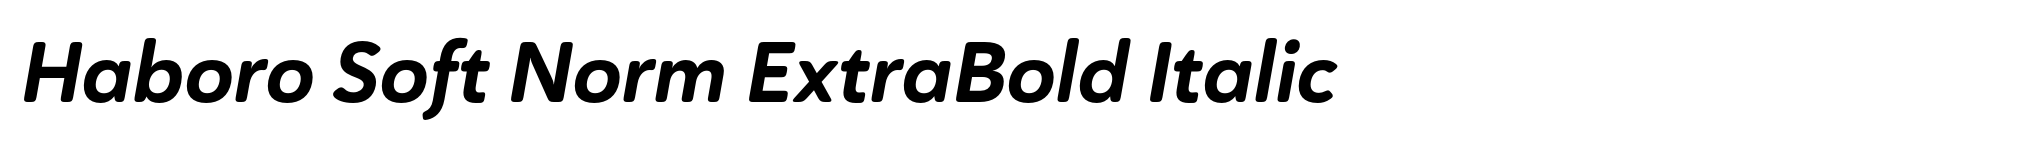 Haboro Soft Norm ExtraBold Italic image